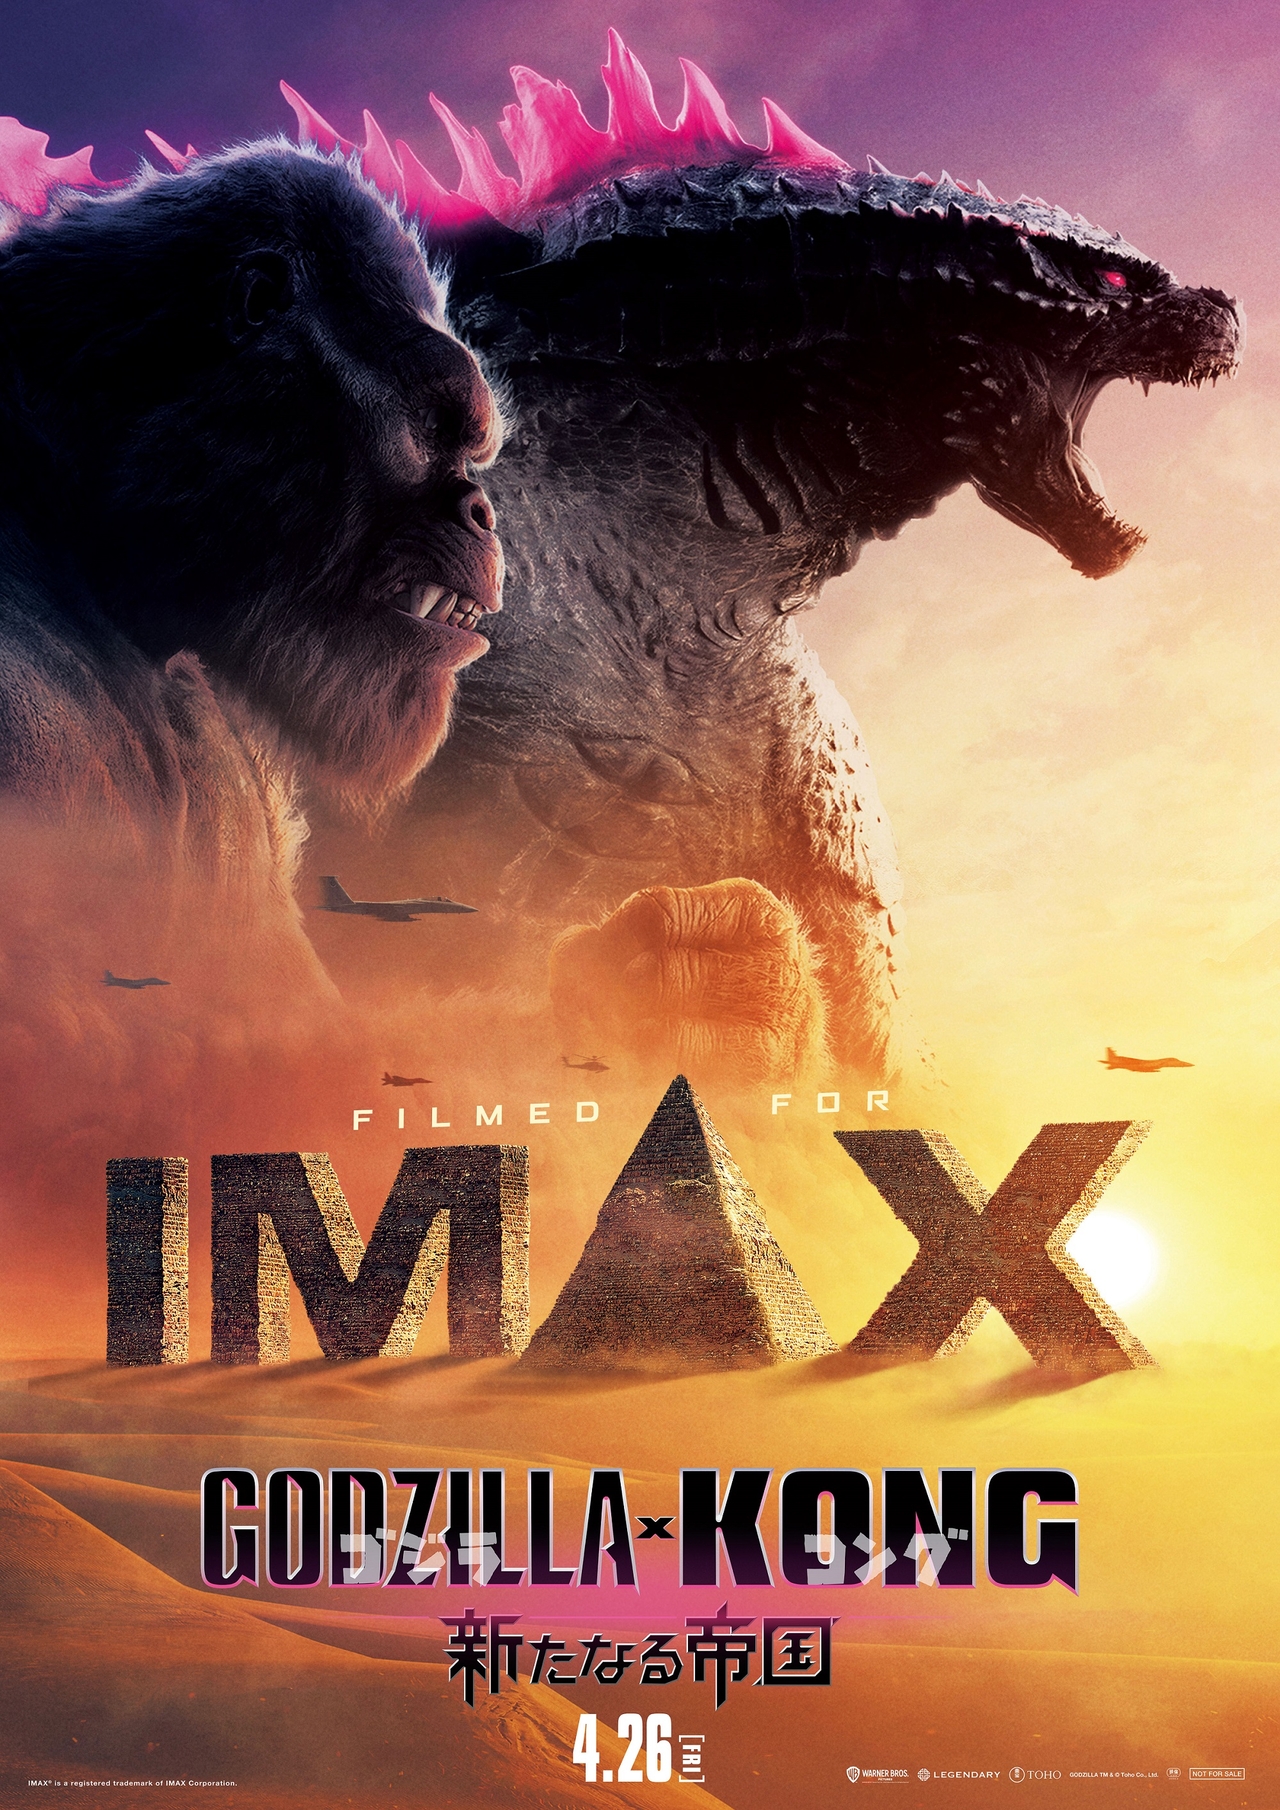 「ゴジラ×コング 新たなる帝国」日本版IMAXエクスクルーシブビジュアル公開【2週連続で全世界興収No.1】